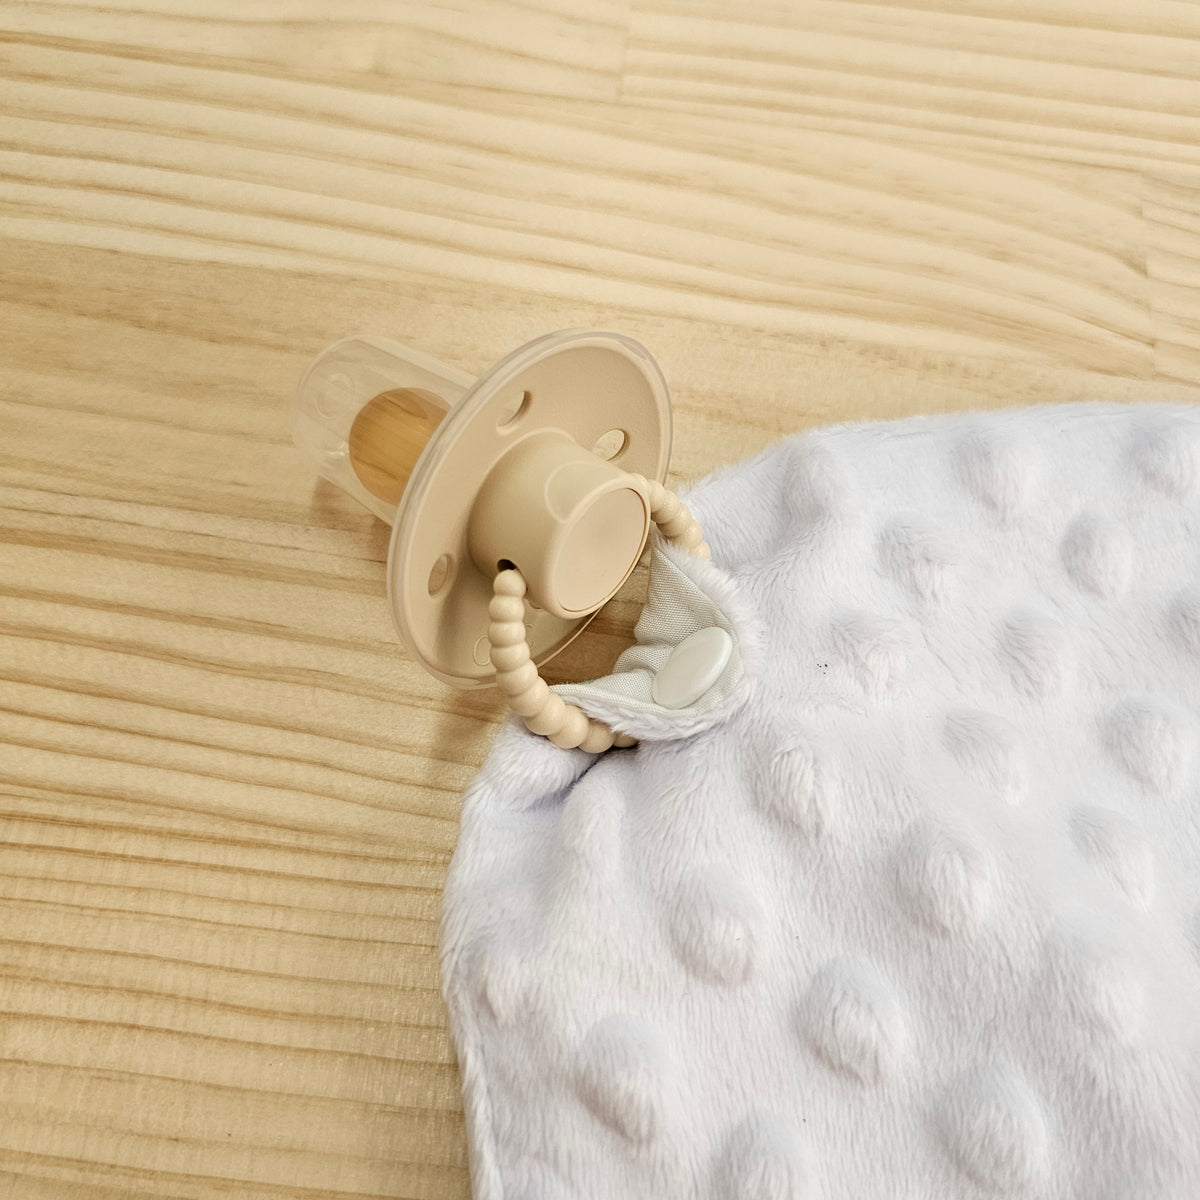 Baby Comforter/ security blanket